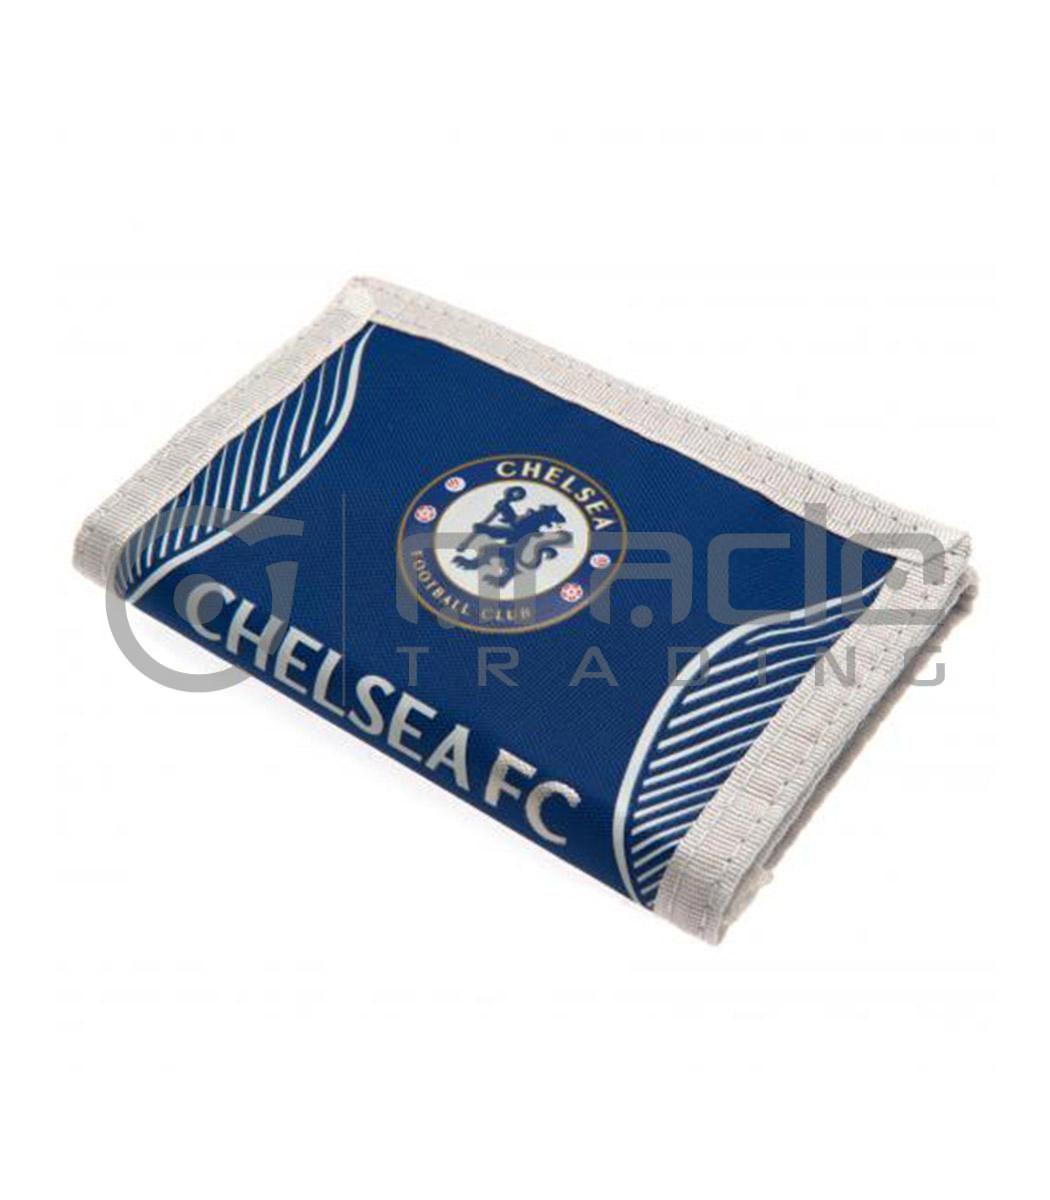 Chelsea Crest Wallet